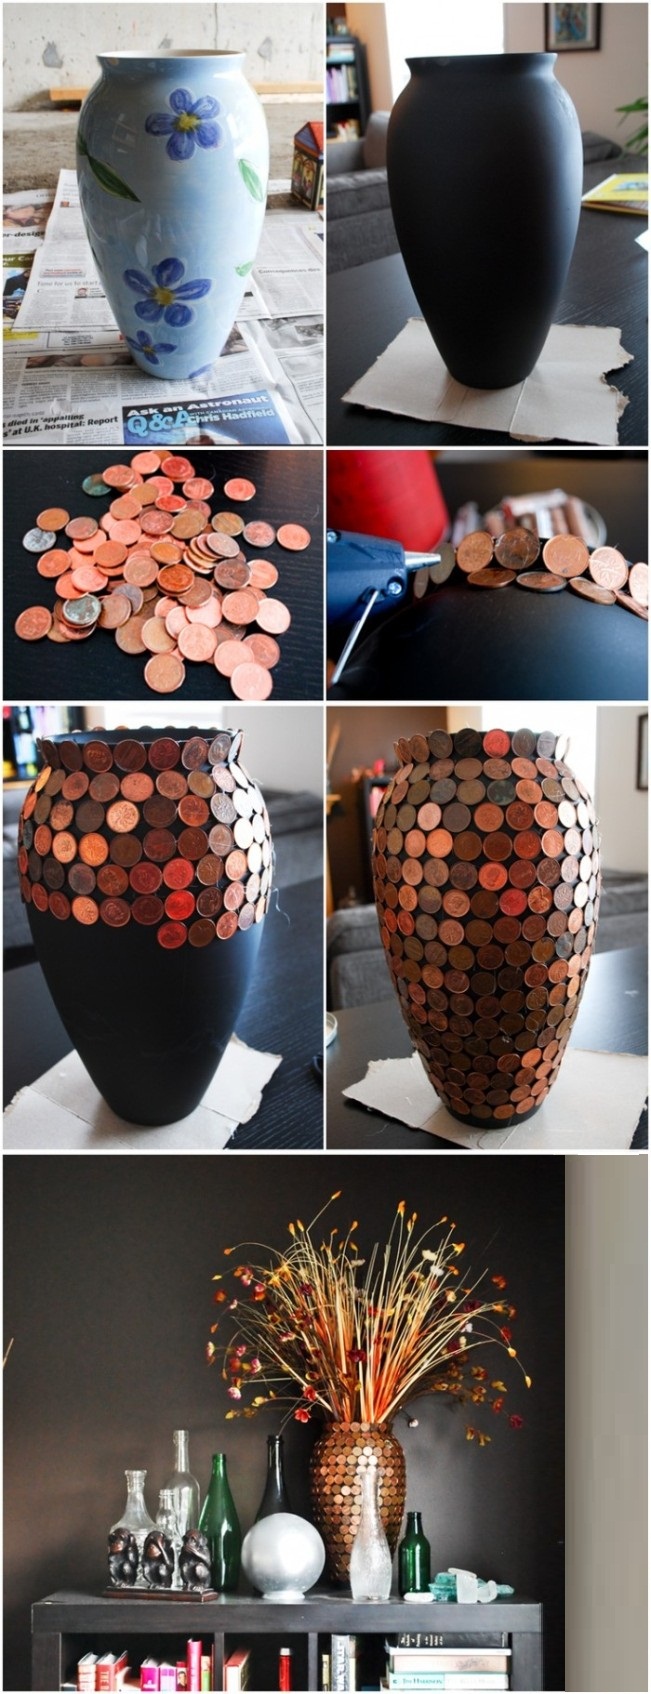 Интересный вариант создания вазы с помощью окрашивания матовой краской и оклеивания монетами